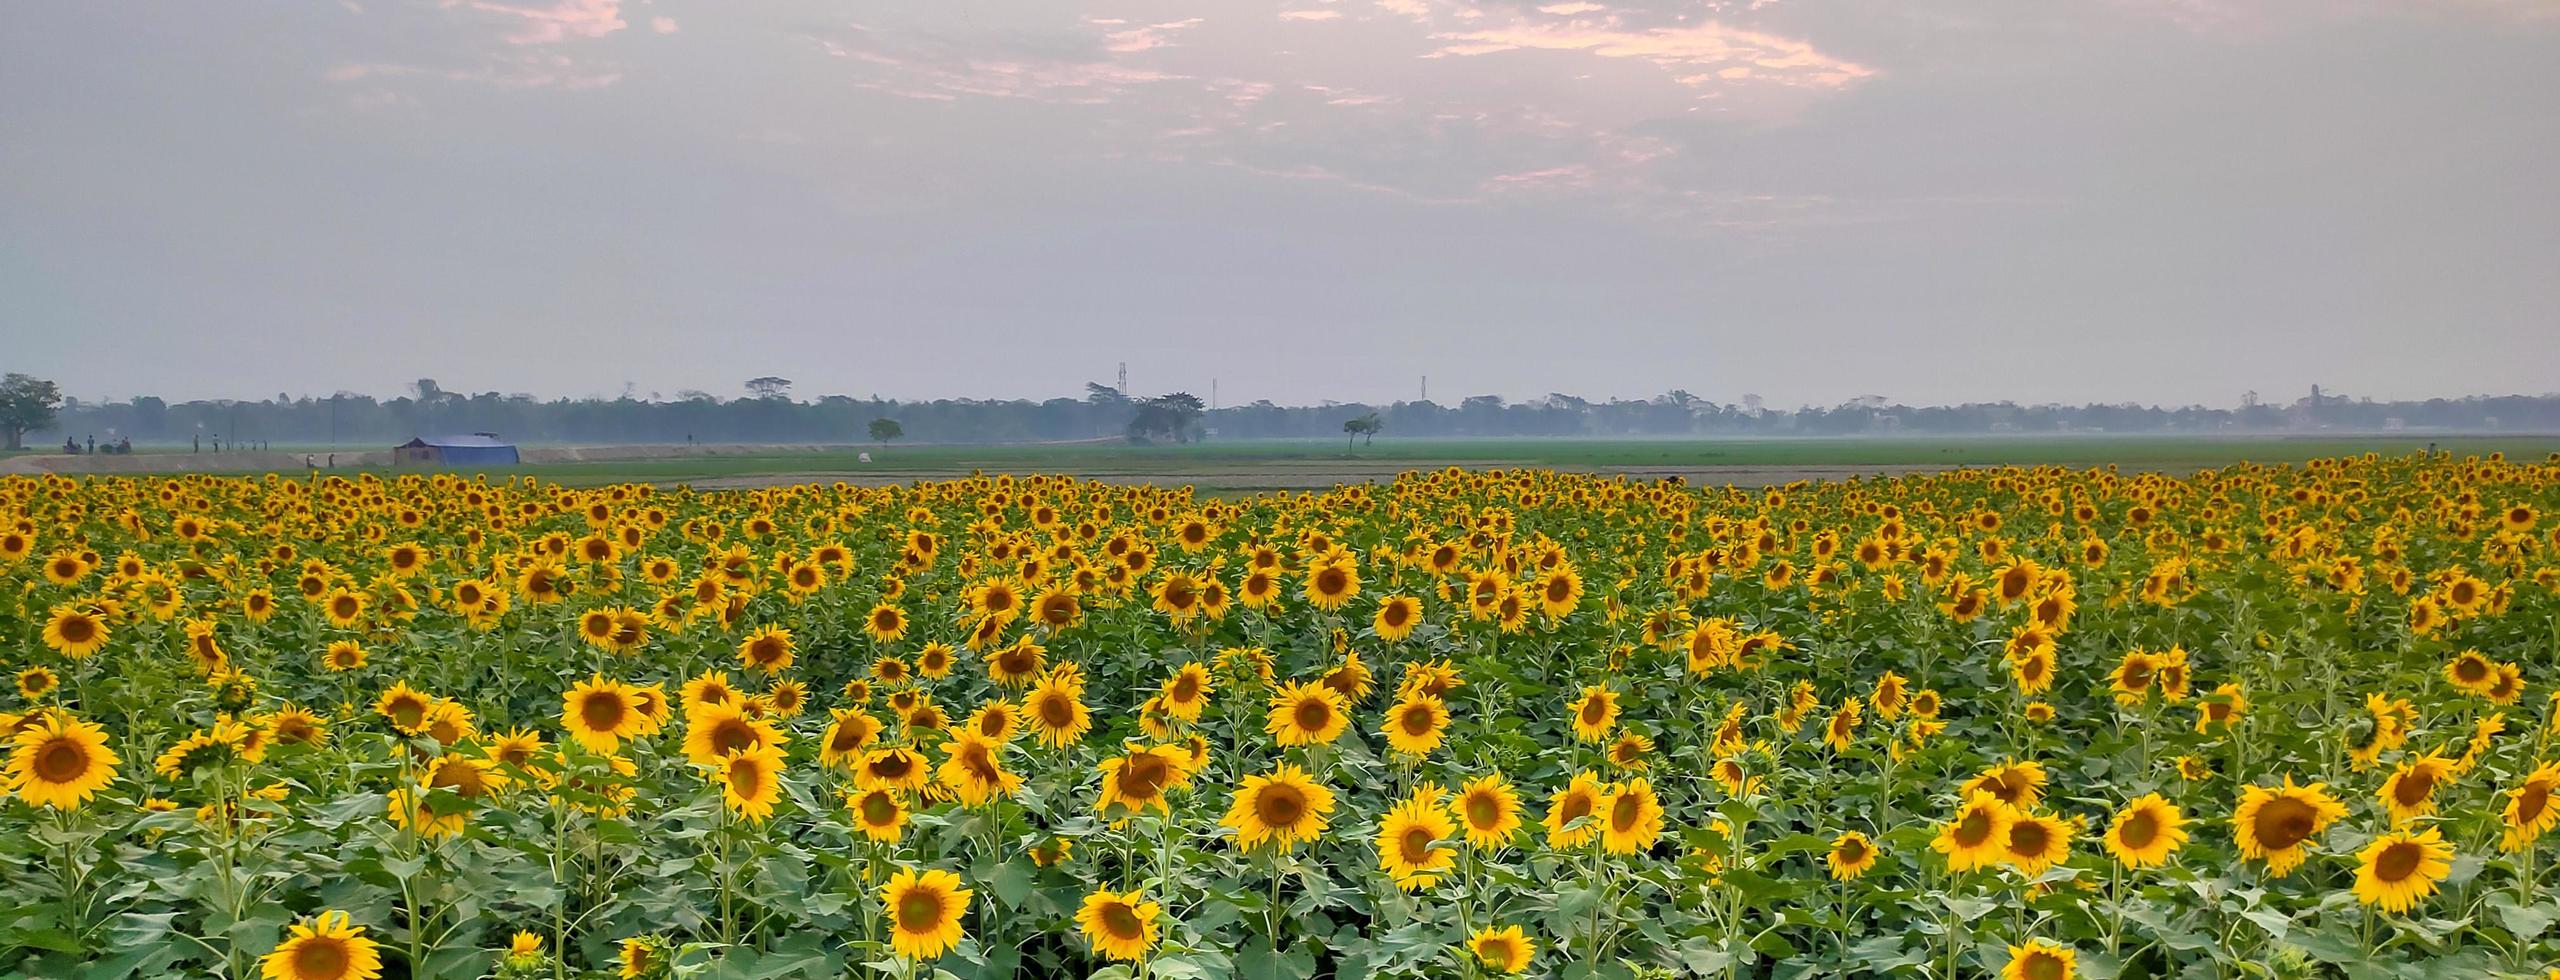 Sonnenblumenfelder und Dorf, Aufnahme eines Sonnenblumenfeldes im Sommer, ein Bild eines Sonnenblumenfeldes foto